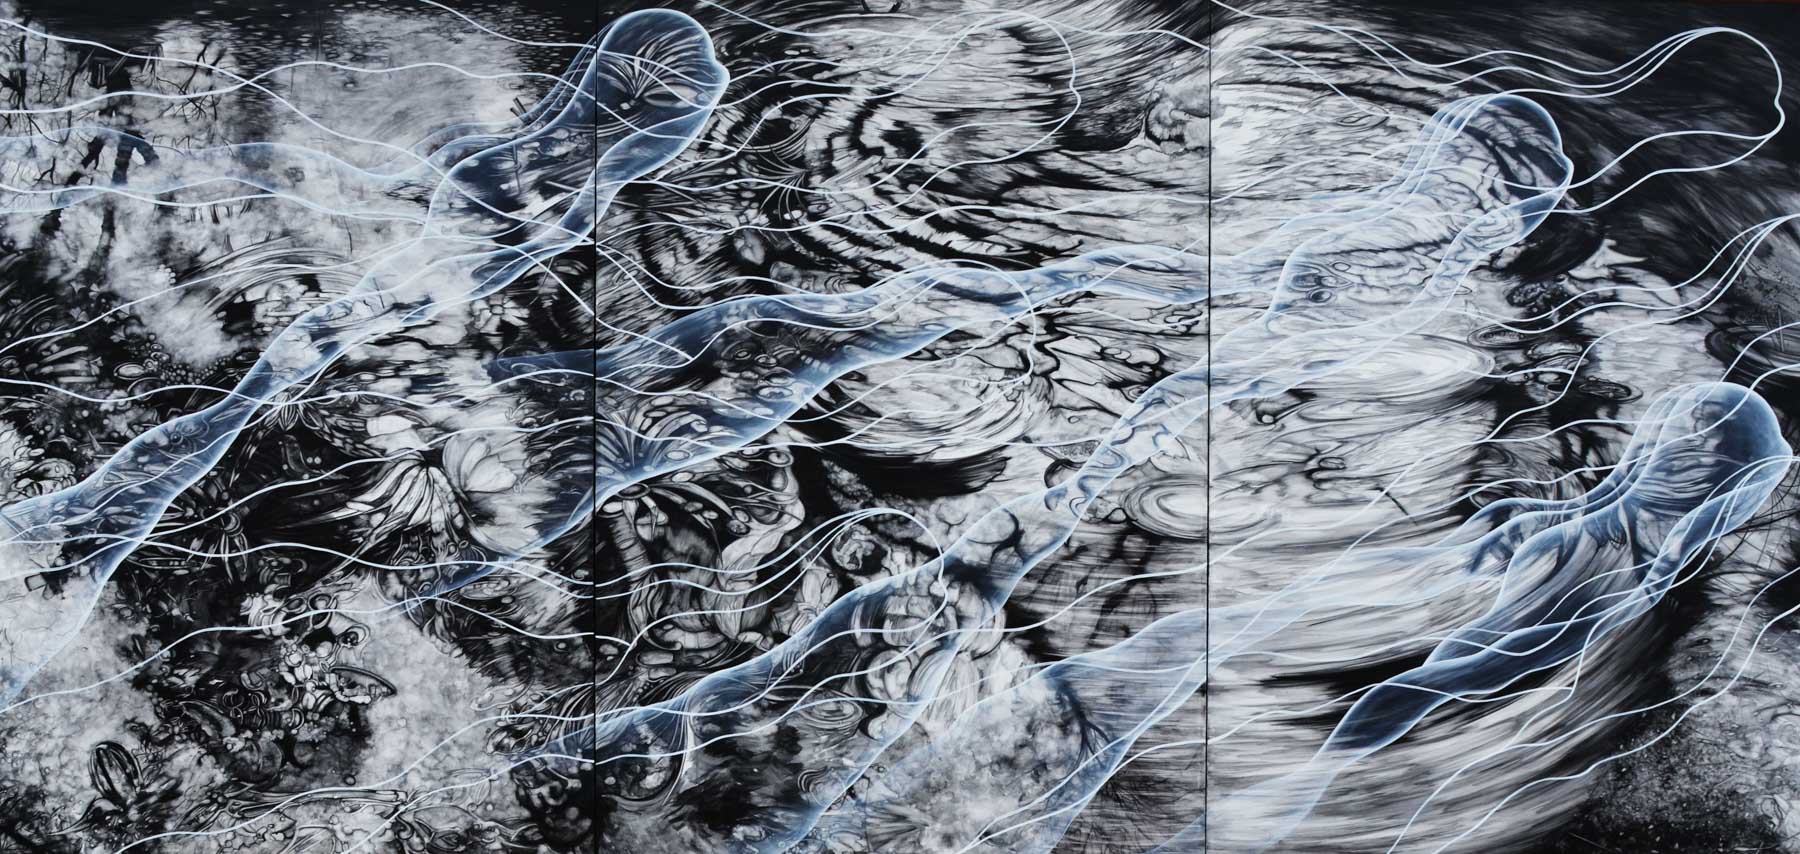 cristina-cocco-opere-artista-levitazioni-cm-252x525-tecnica-mista-su-tela-2014